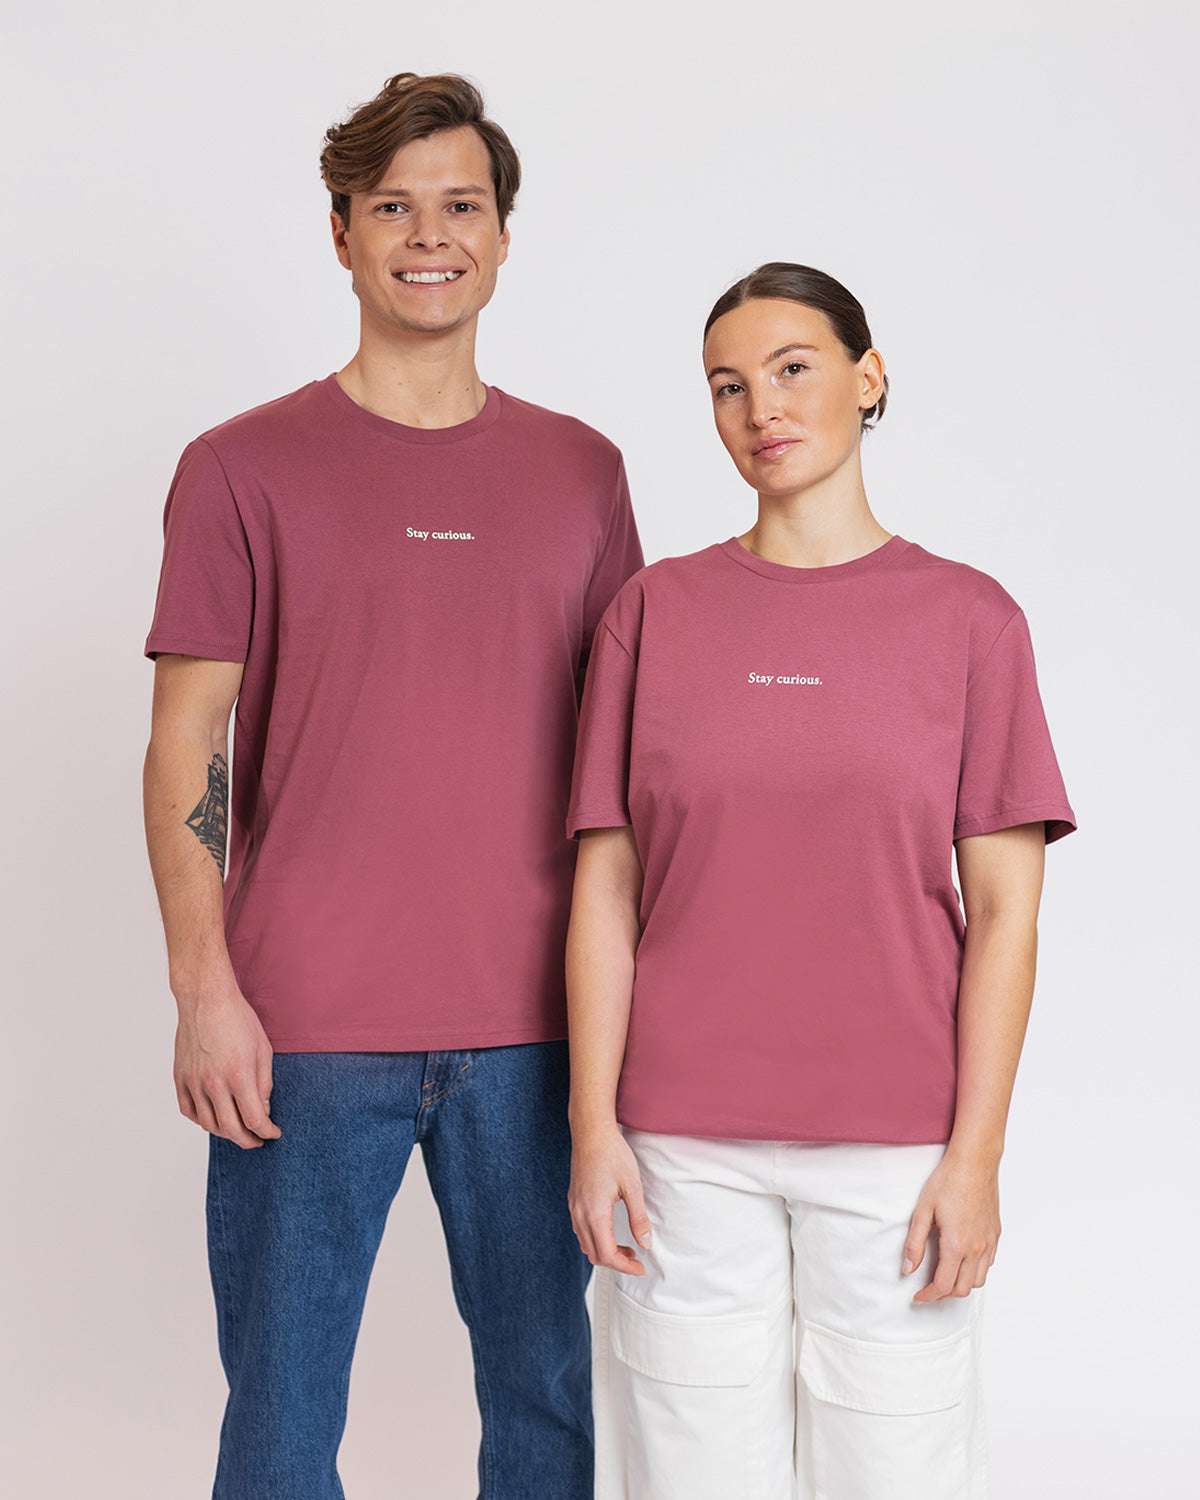 Hibiscus T-shirt